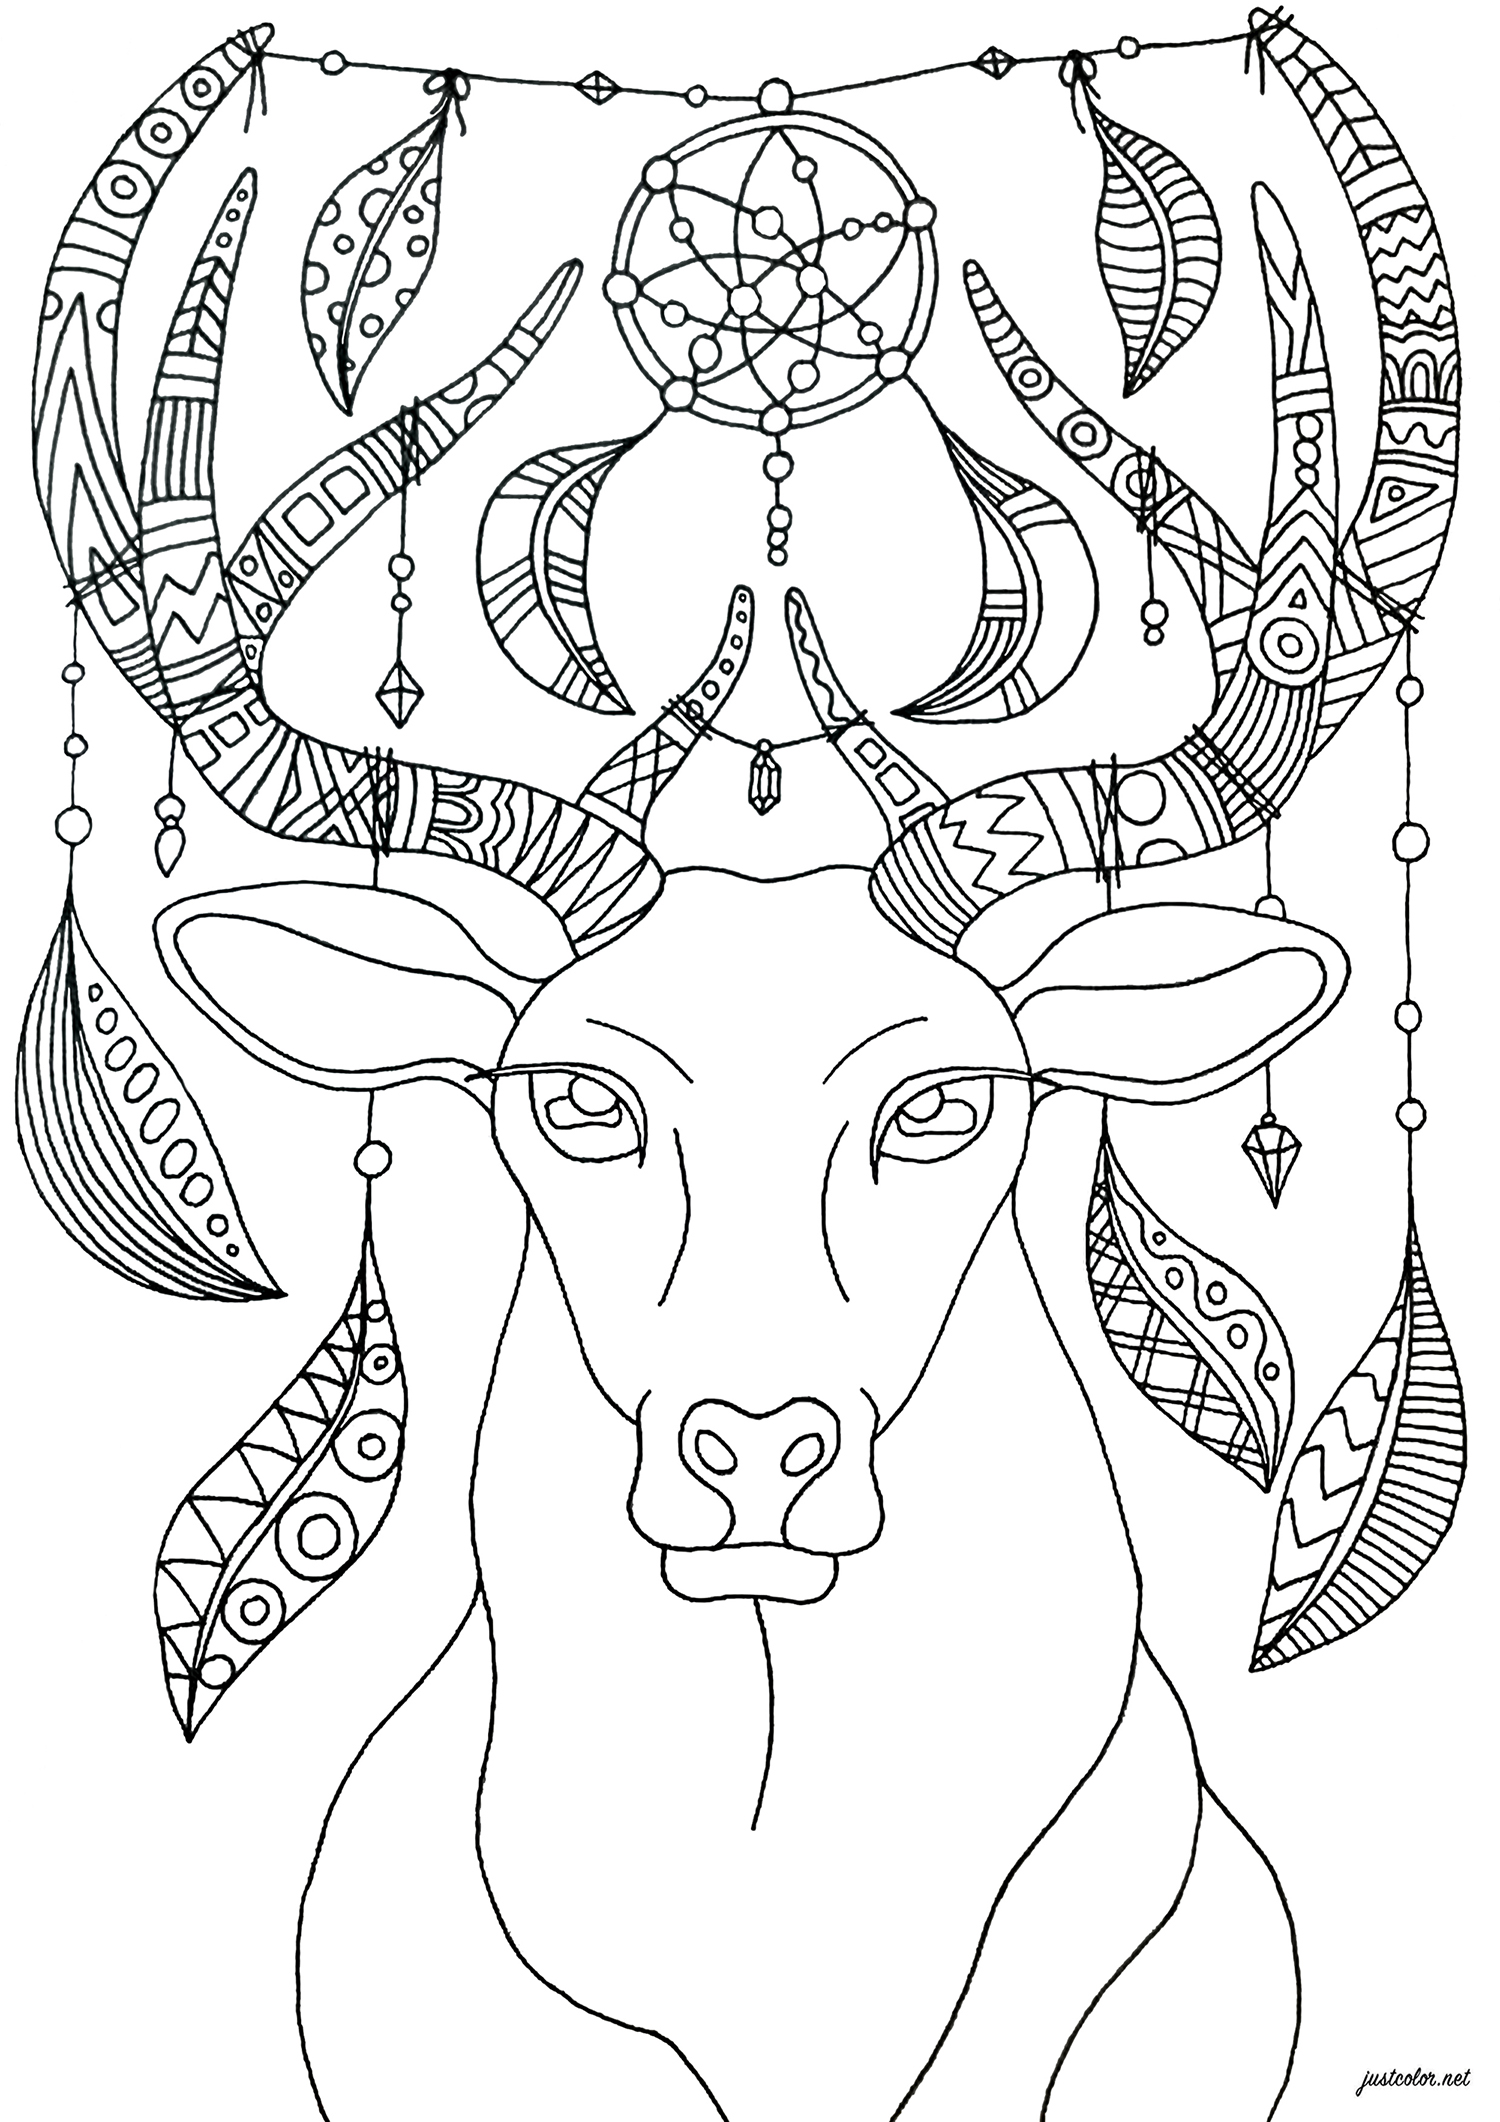 Colorate questo cervo con ornamenti bohémien e rilassanti - versione semplice